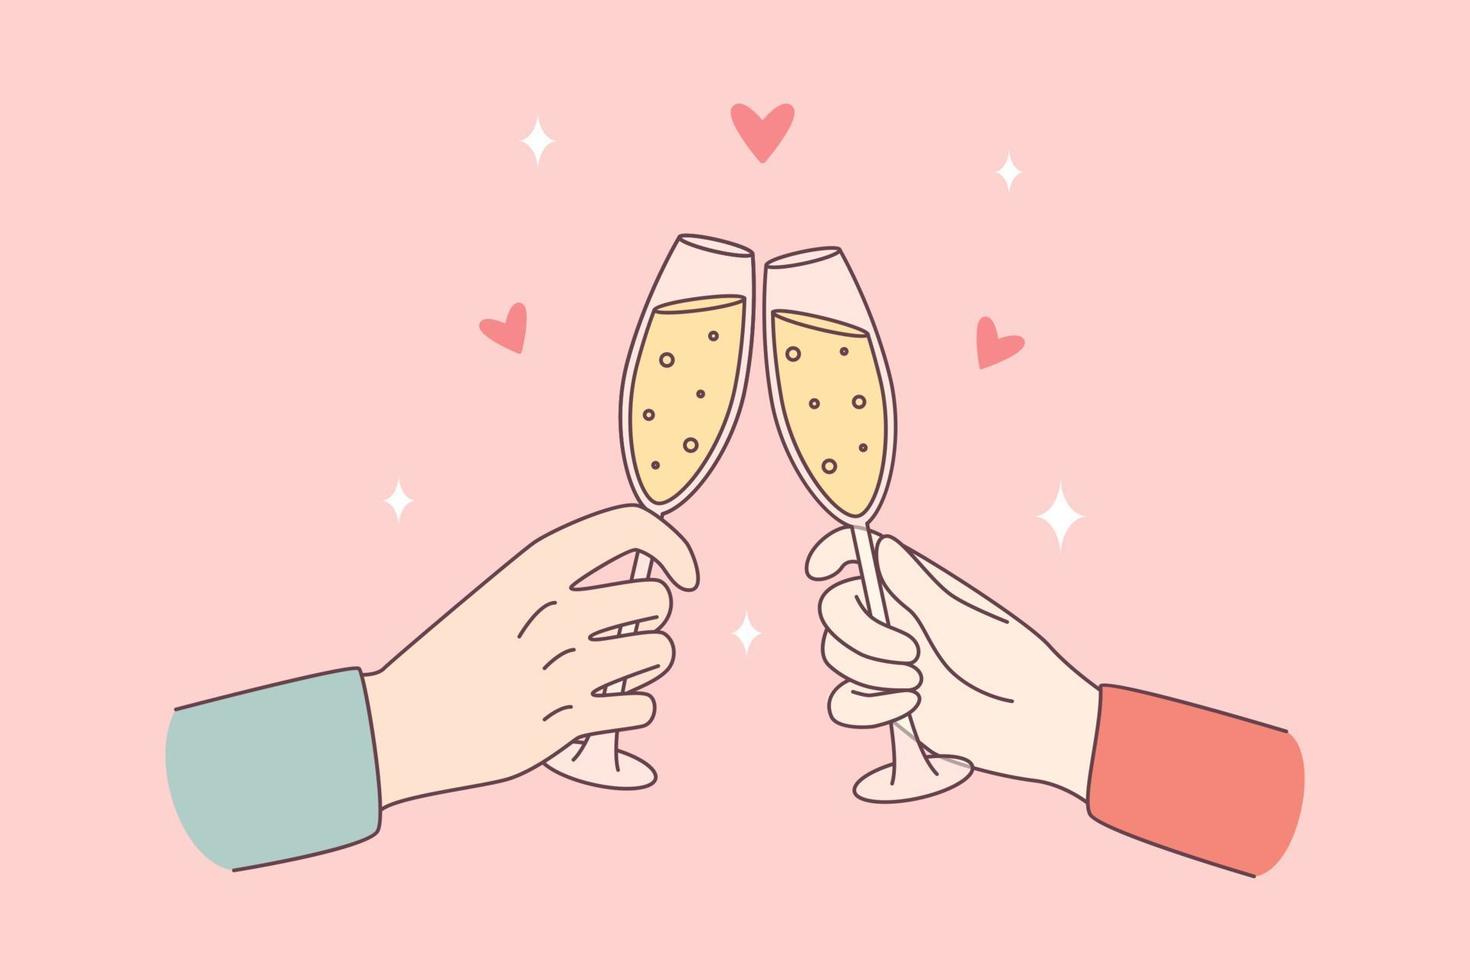 célébrer avec le concept champagne et acclamations. mains humaines de couple tintant des verres avec du vin mousseux célébrant l'illustration vectorielle de vacances vecteur